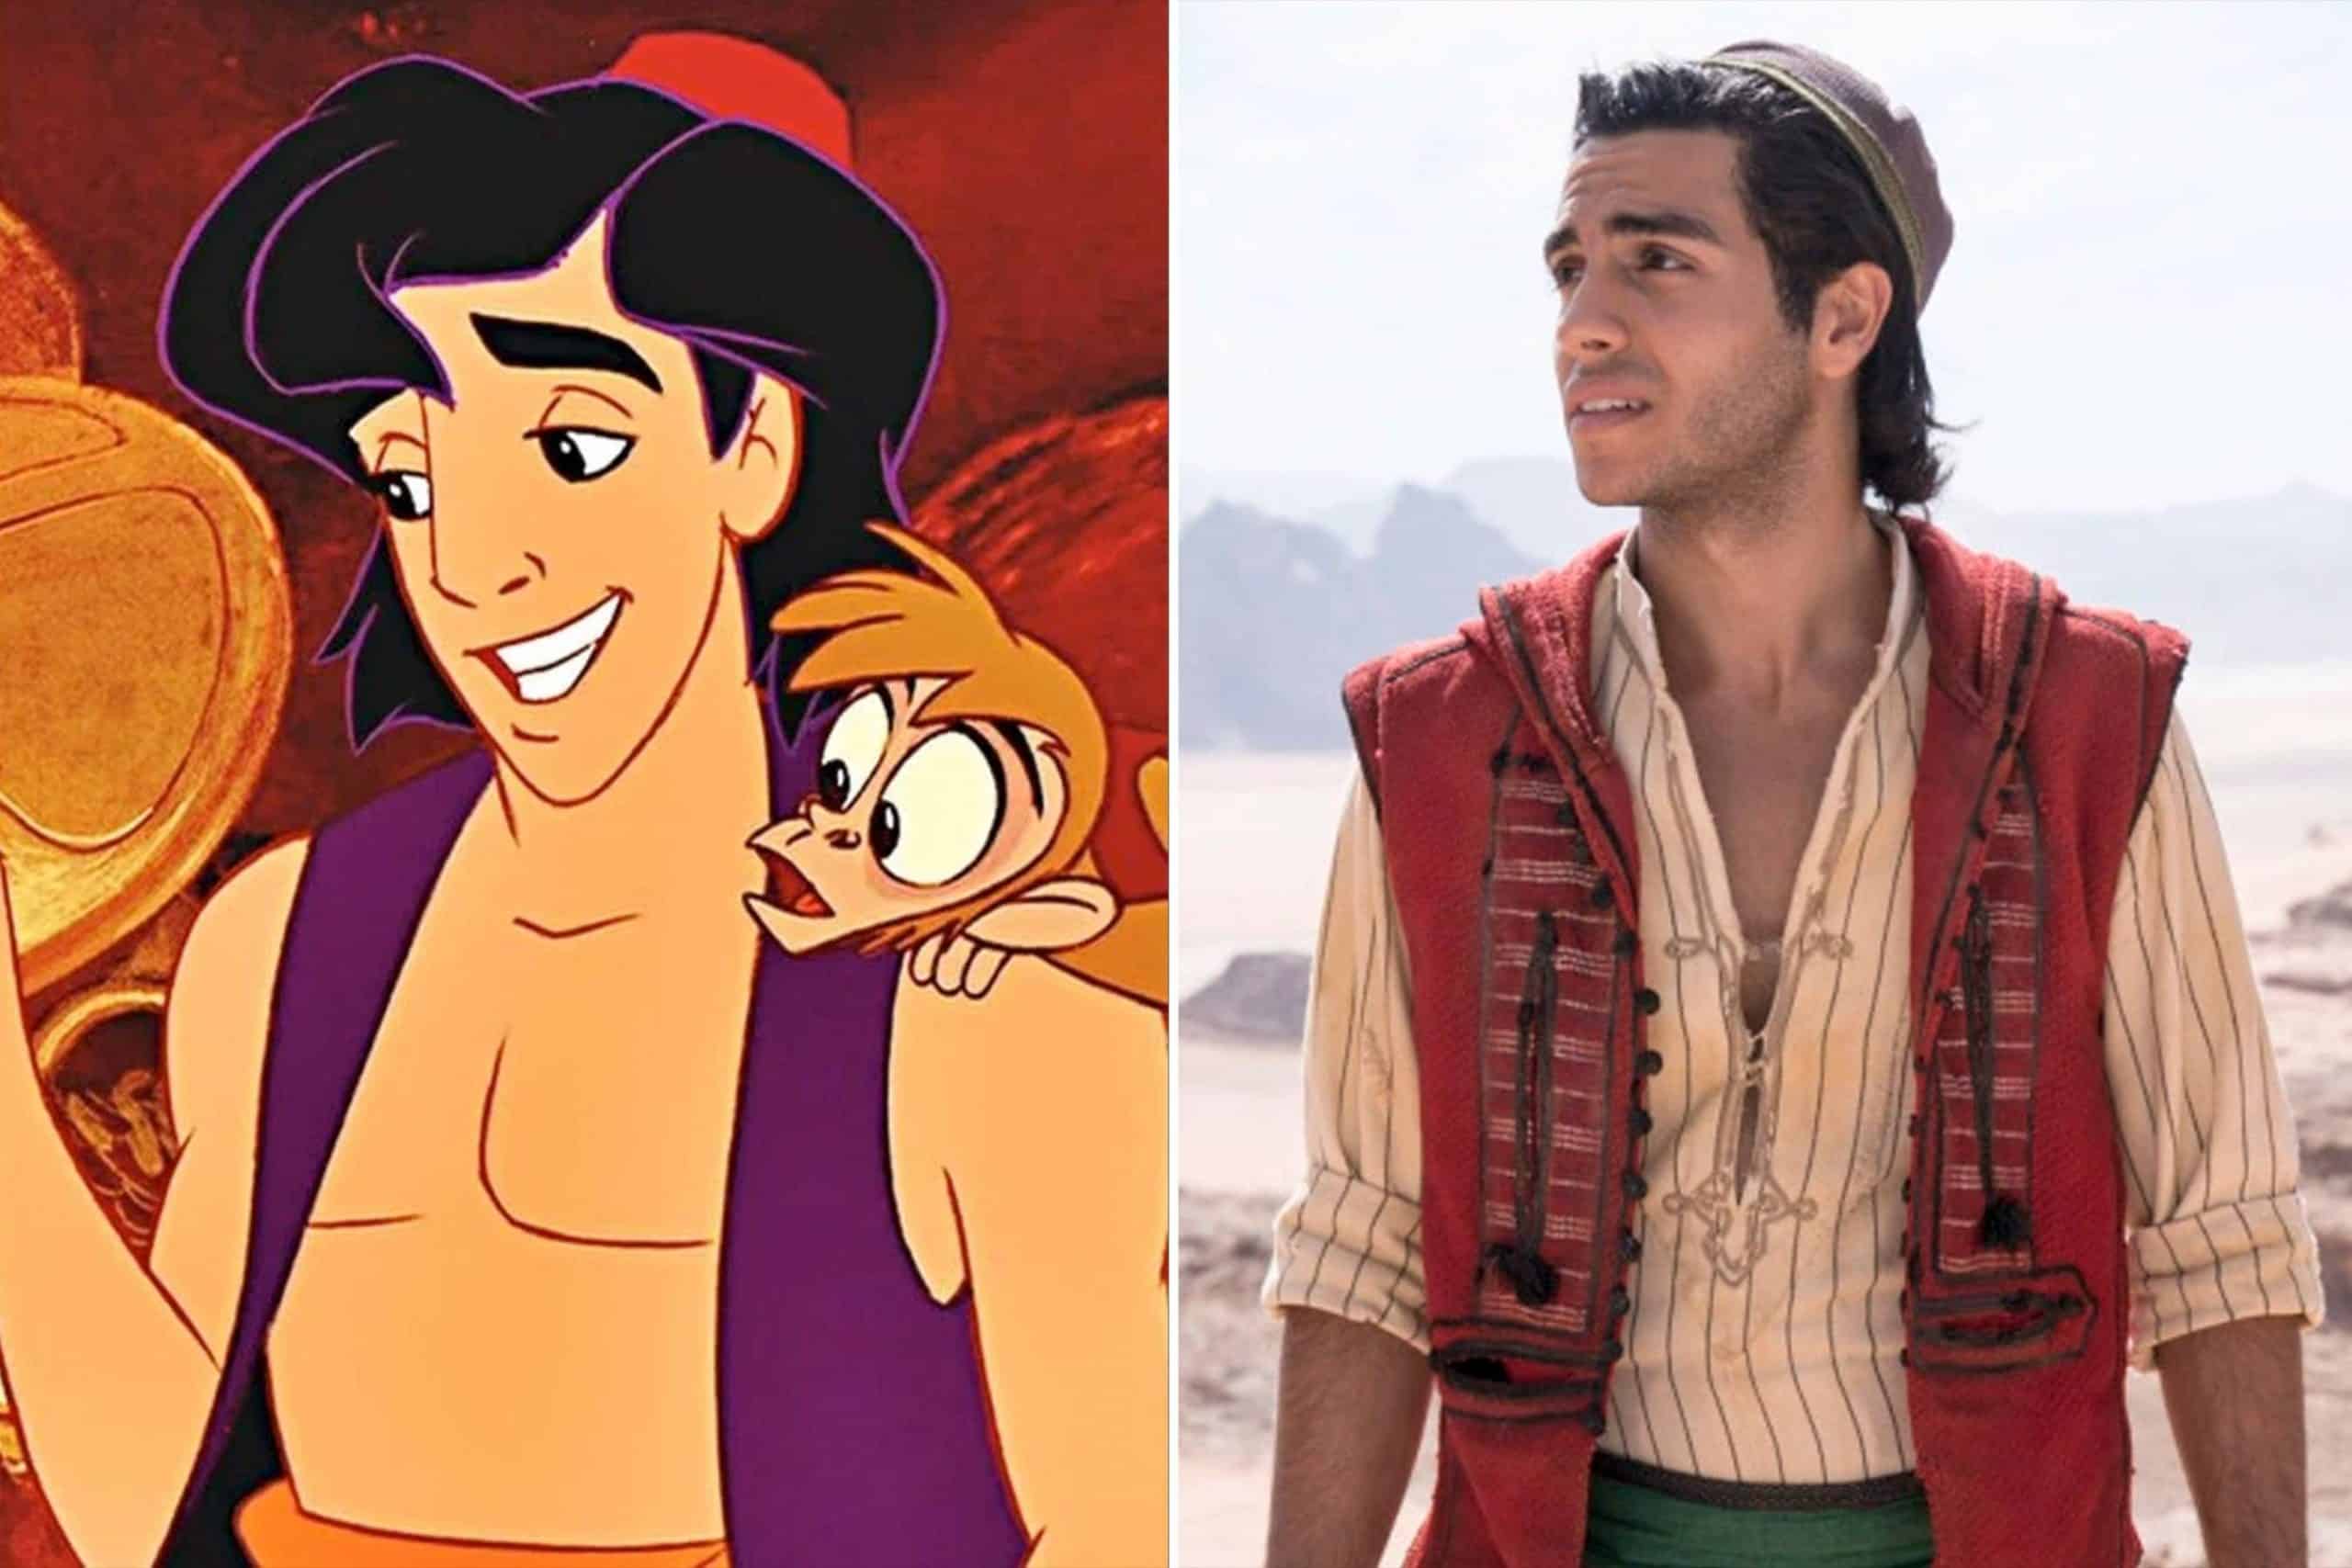 Due immagini con Aladdin:
la prima mostra la versione animata con in dosso solo il gilet;
la seconda è tratta dal live action Disney in cui ha anche una camicia.